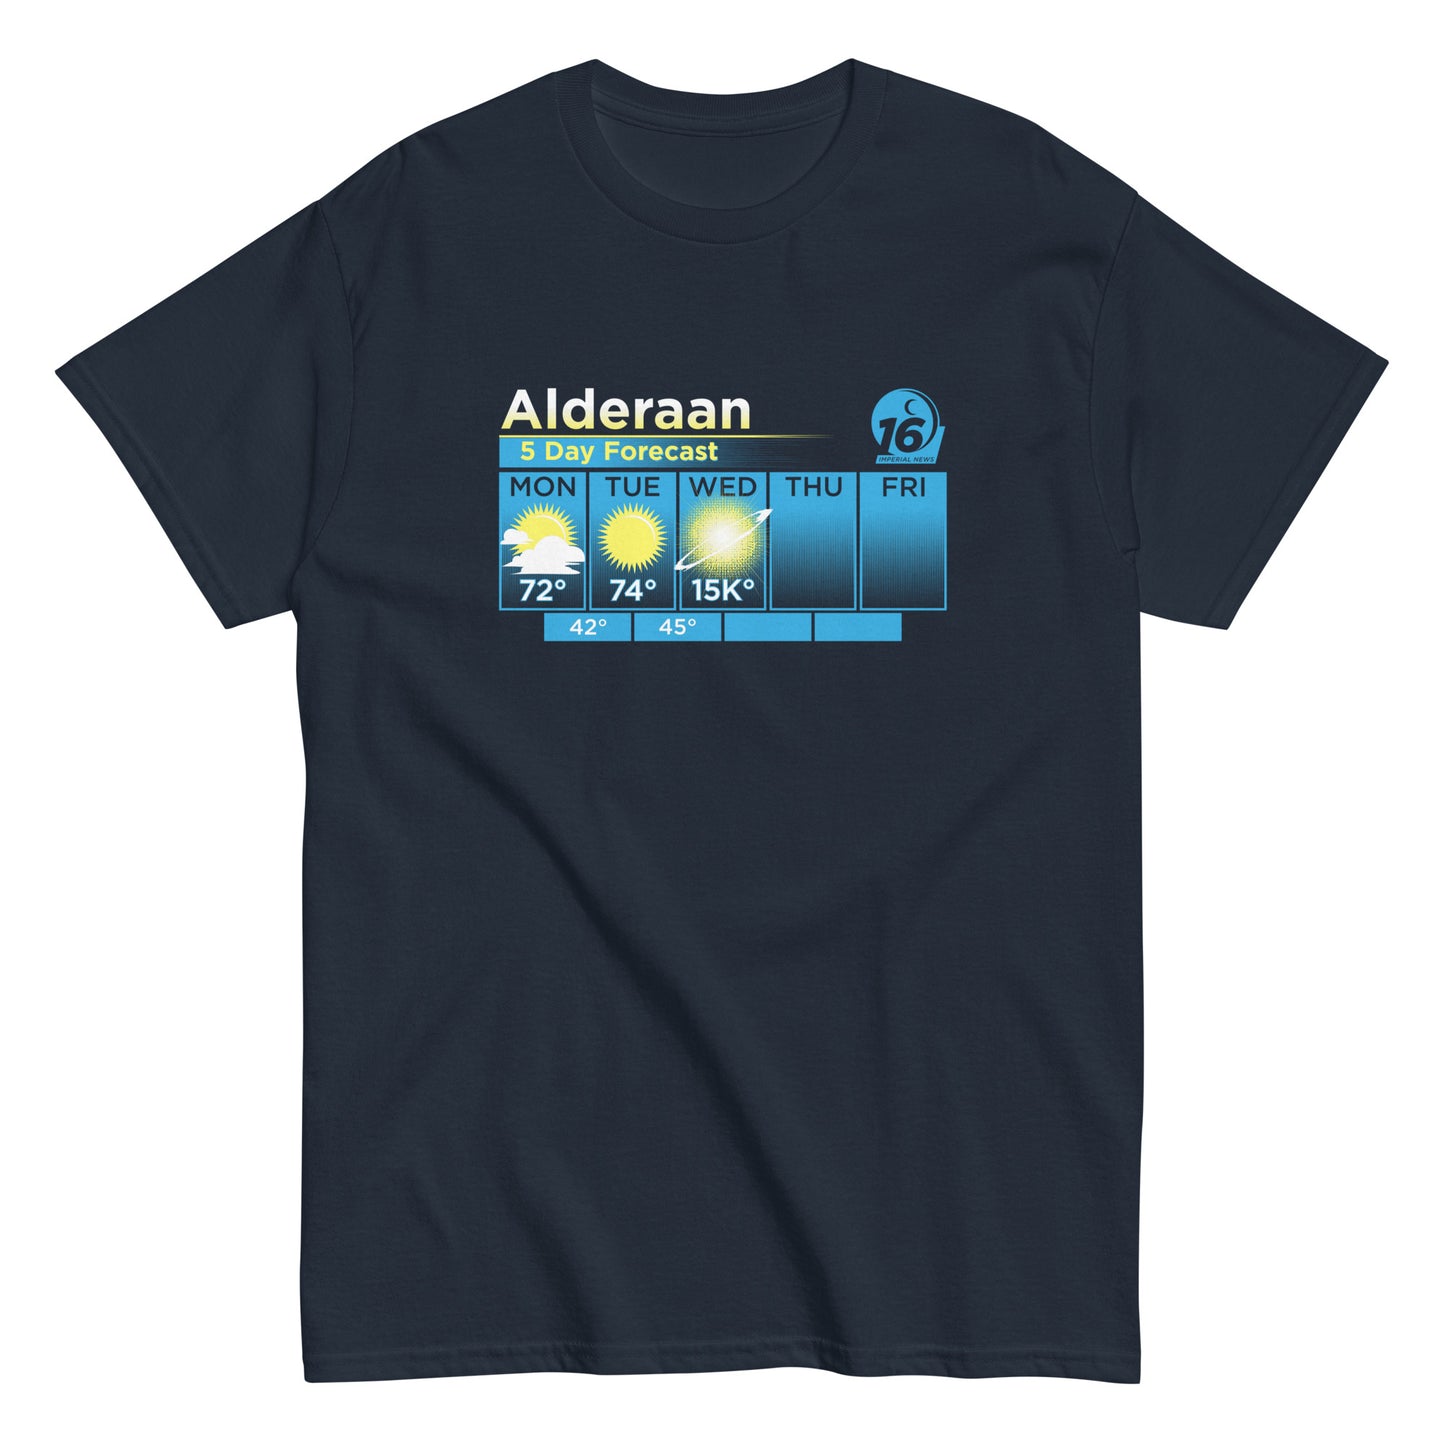 Alderaan 5 Day Forecast Men's Classic Tee